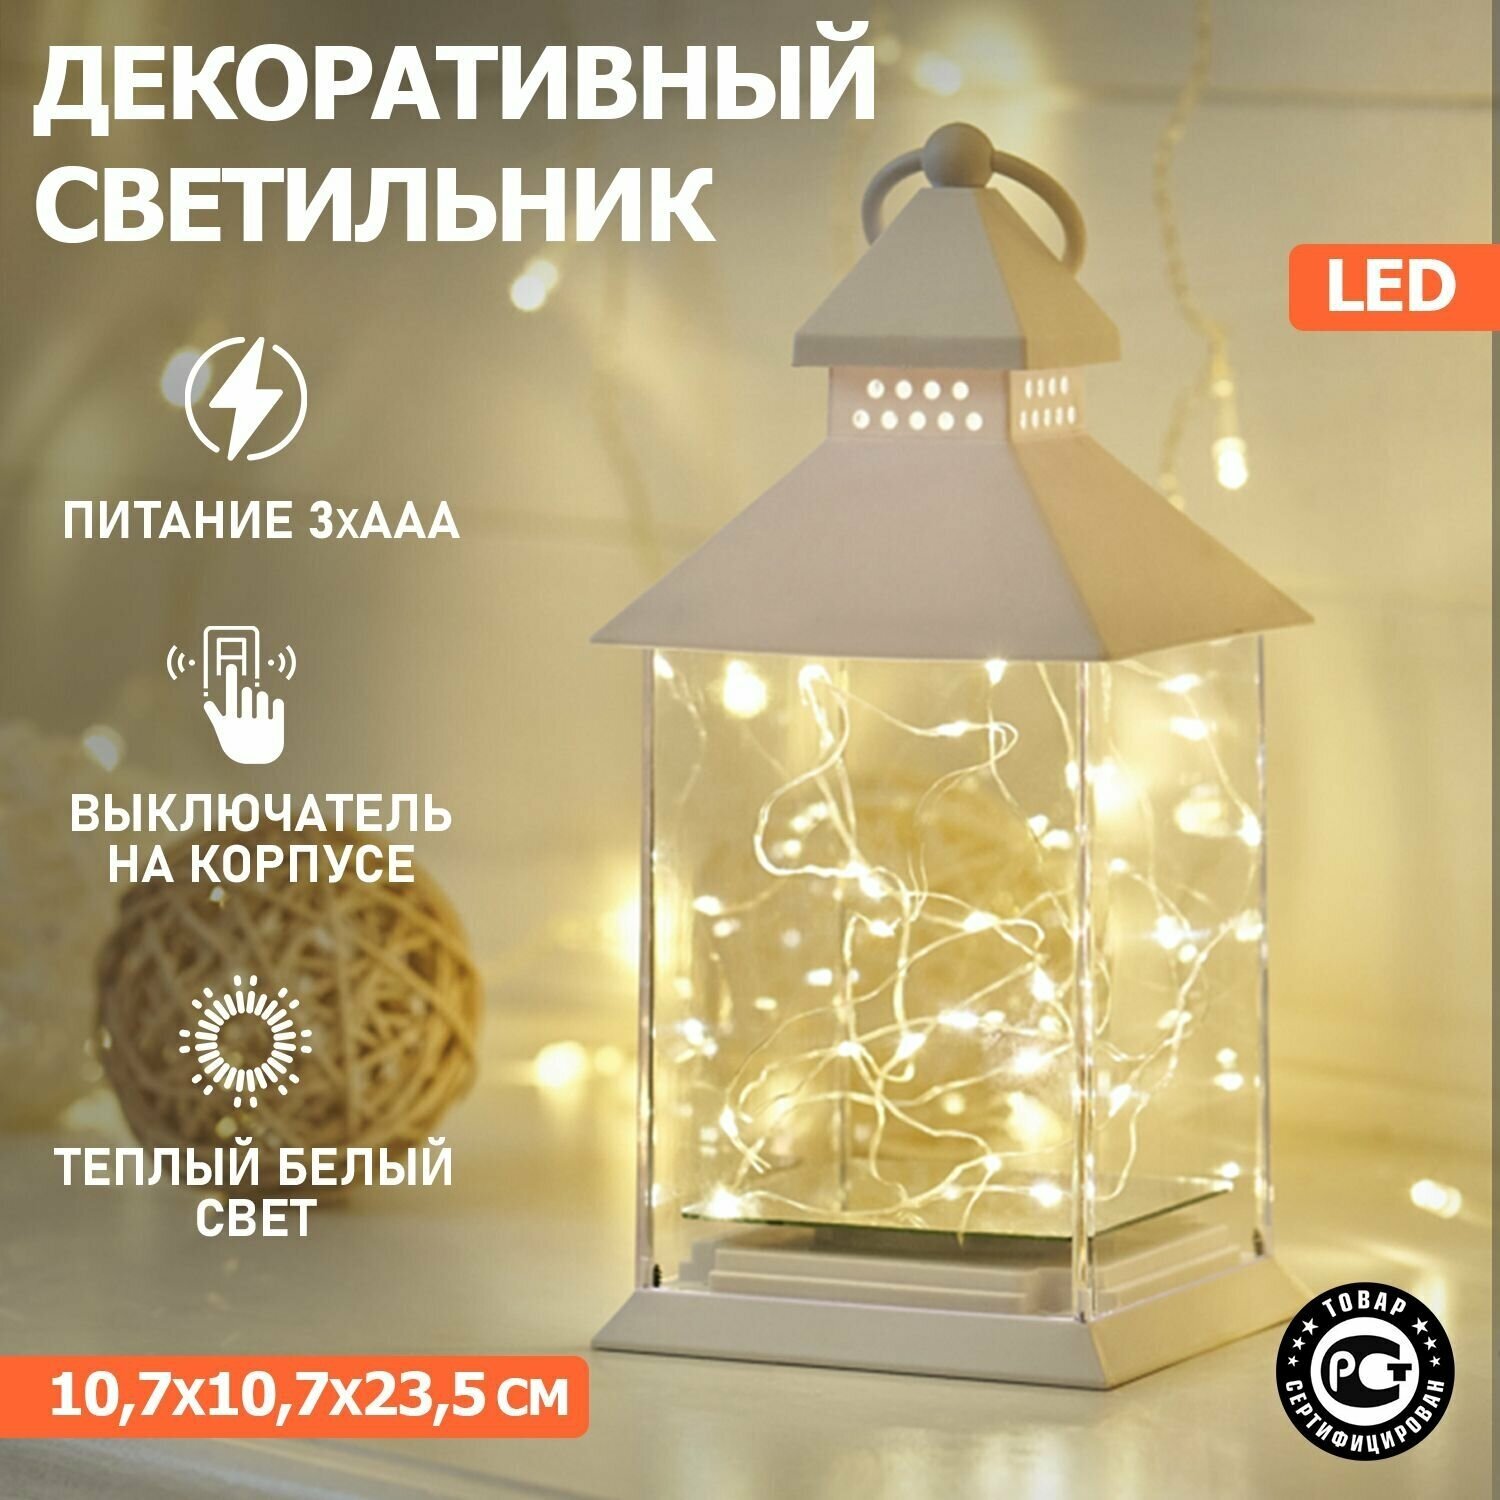 Светильник декоративный настольный фонарь новогодний ночник светодиодный Neon-Night 23.5 см LED подвесной декоративный с росой, на батарейках